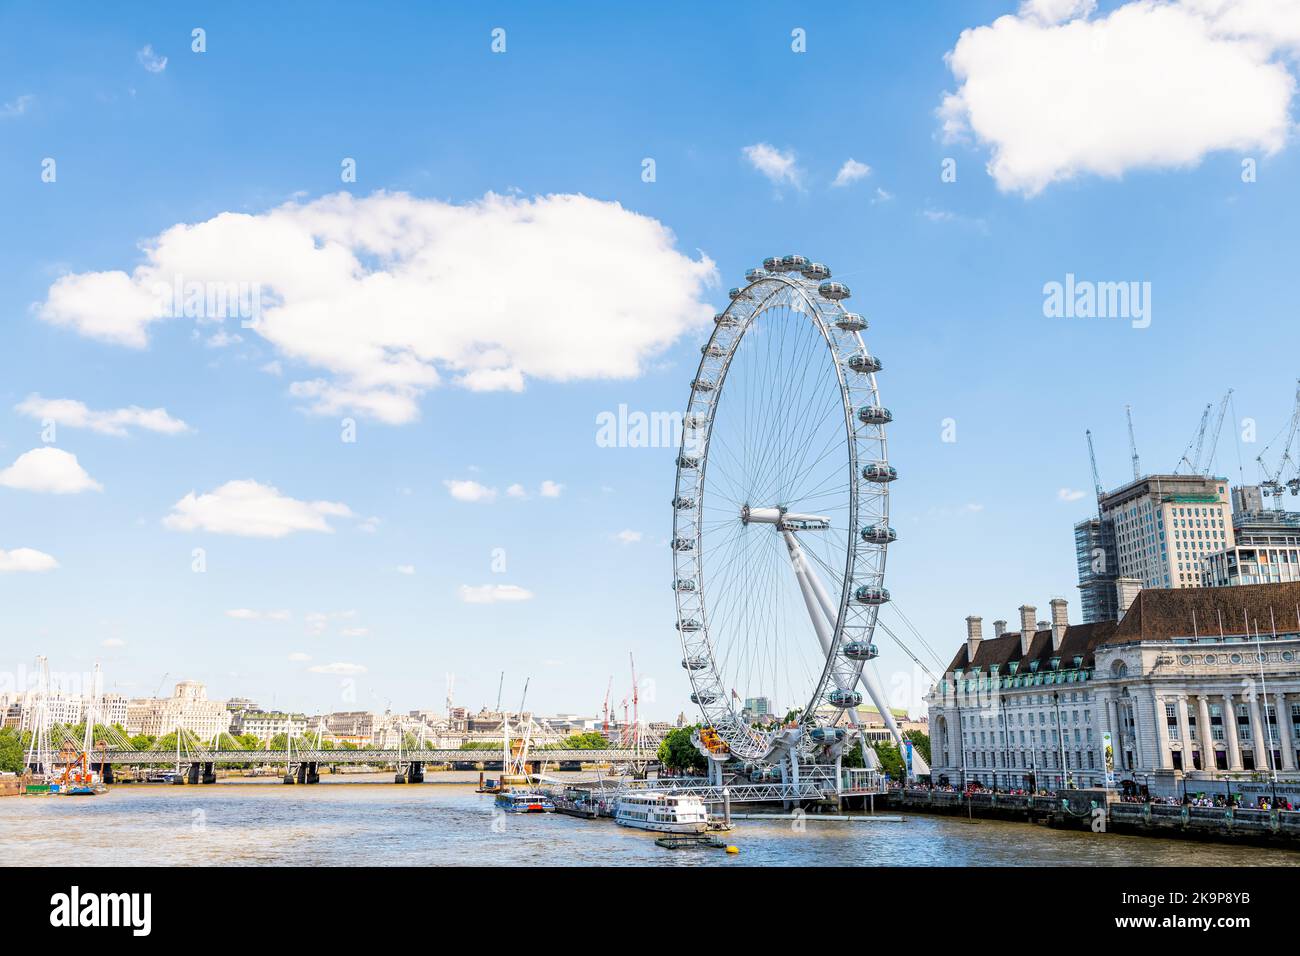 Londres, Royaume-Uni - 22 juin 2018 : vue depuis le pont de Westminster sur les ponts du Jubilé d'or de Hungerford, roue du Millenium sur la Tamise Banque D'Images